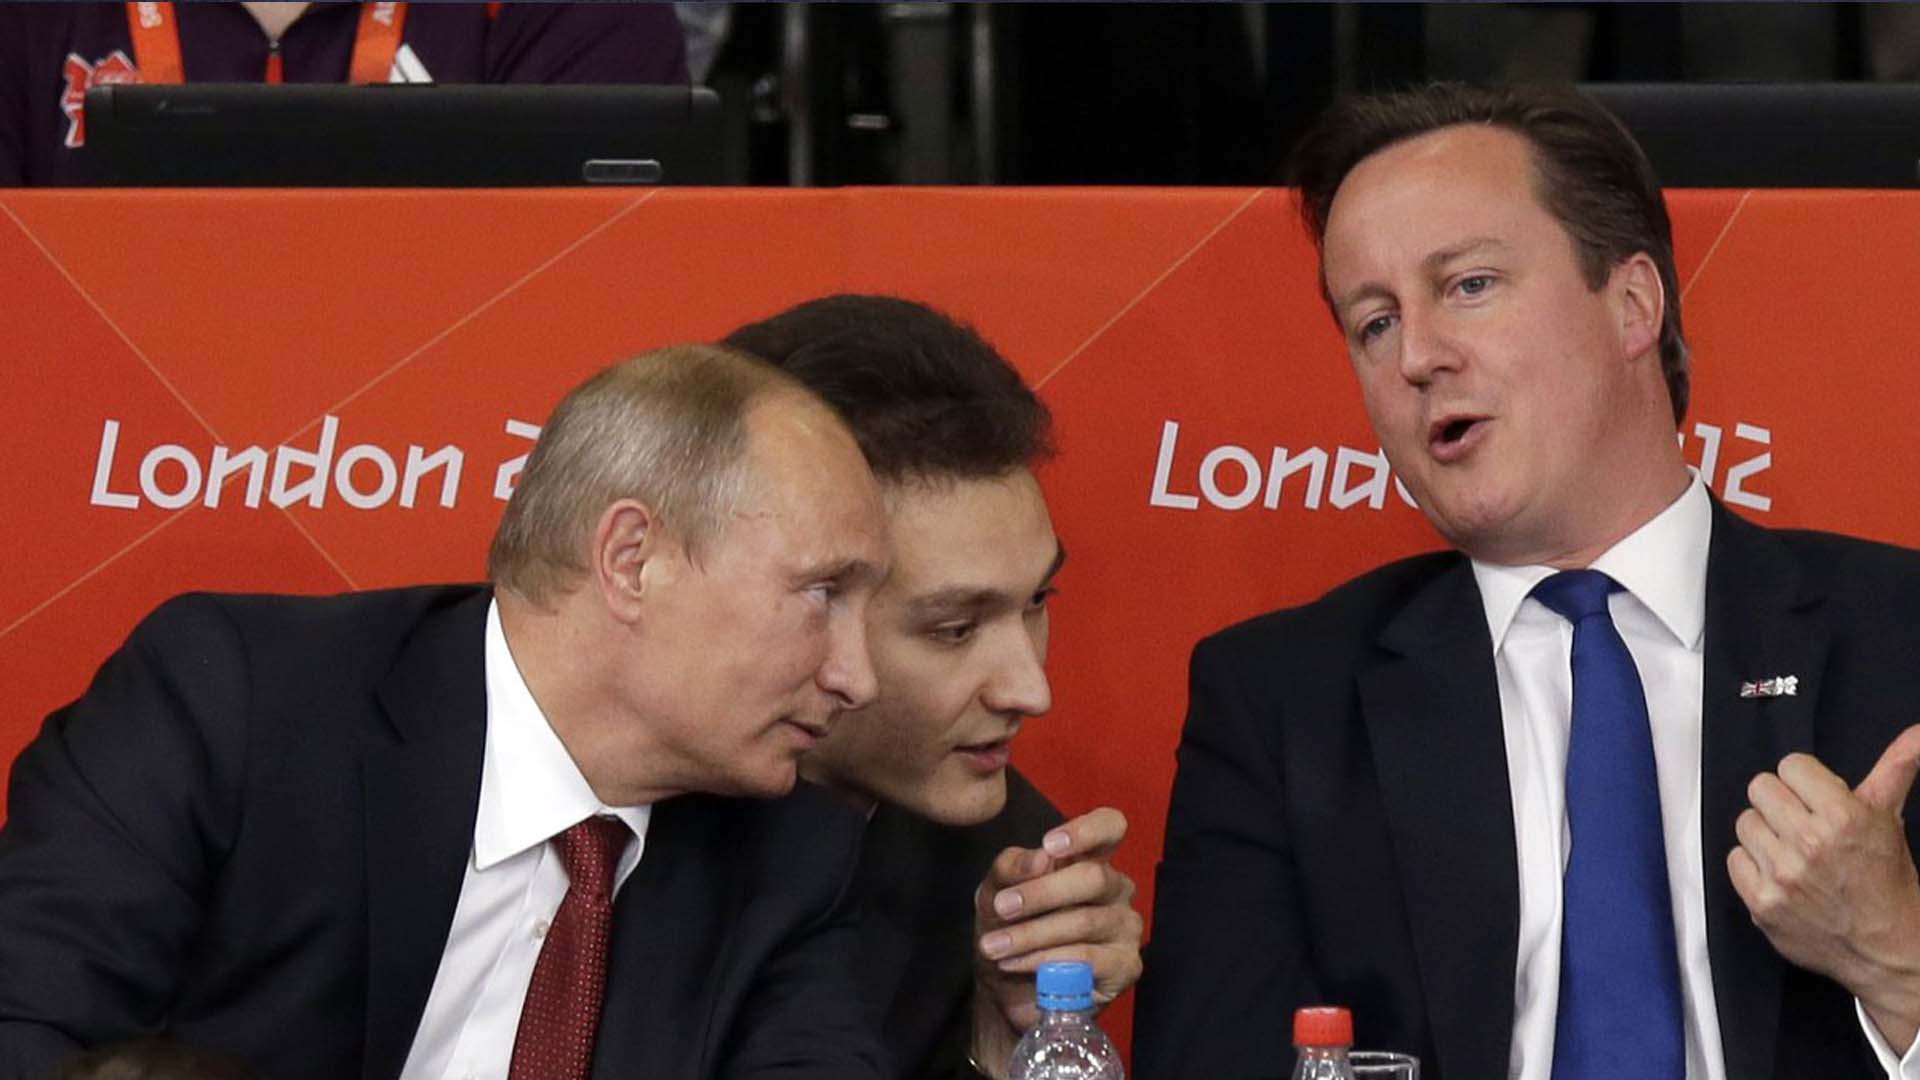 Le président russe Vladmir Poutine, à gauche, et le Premier ministre britannique David Cameron regardent le judo lors de la compétition masculine de judo de 100 kg aux Jeux olympiques d'été de 2012, le 2 août 2012, à Londres.